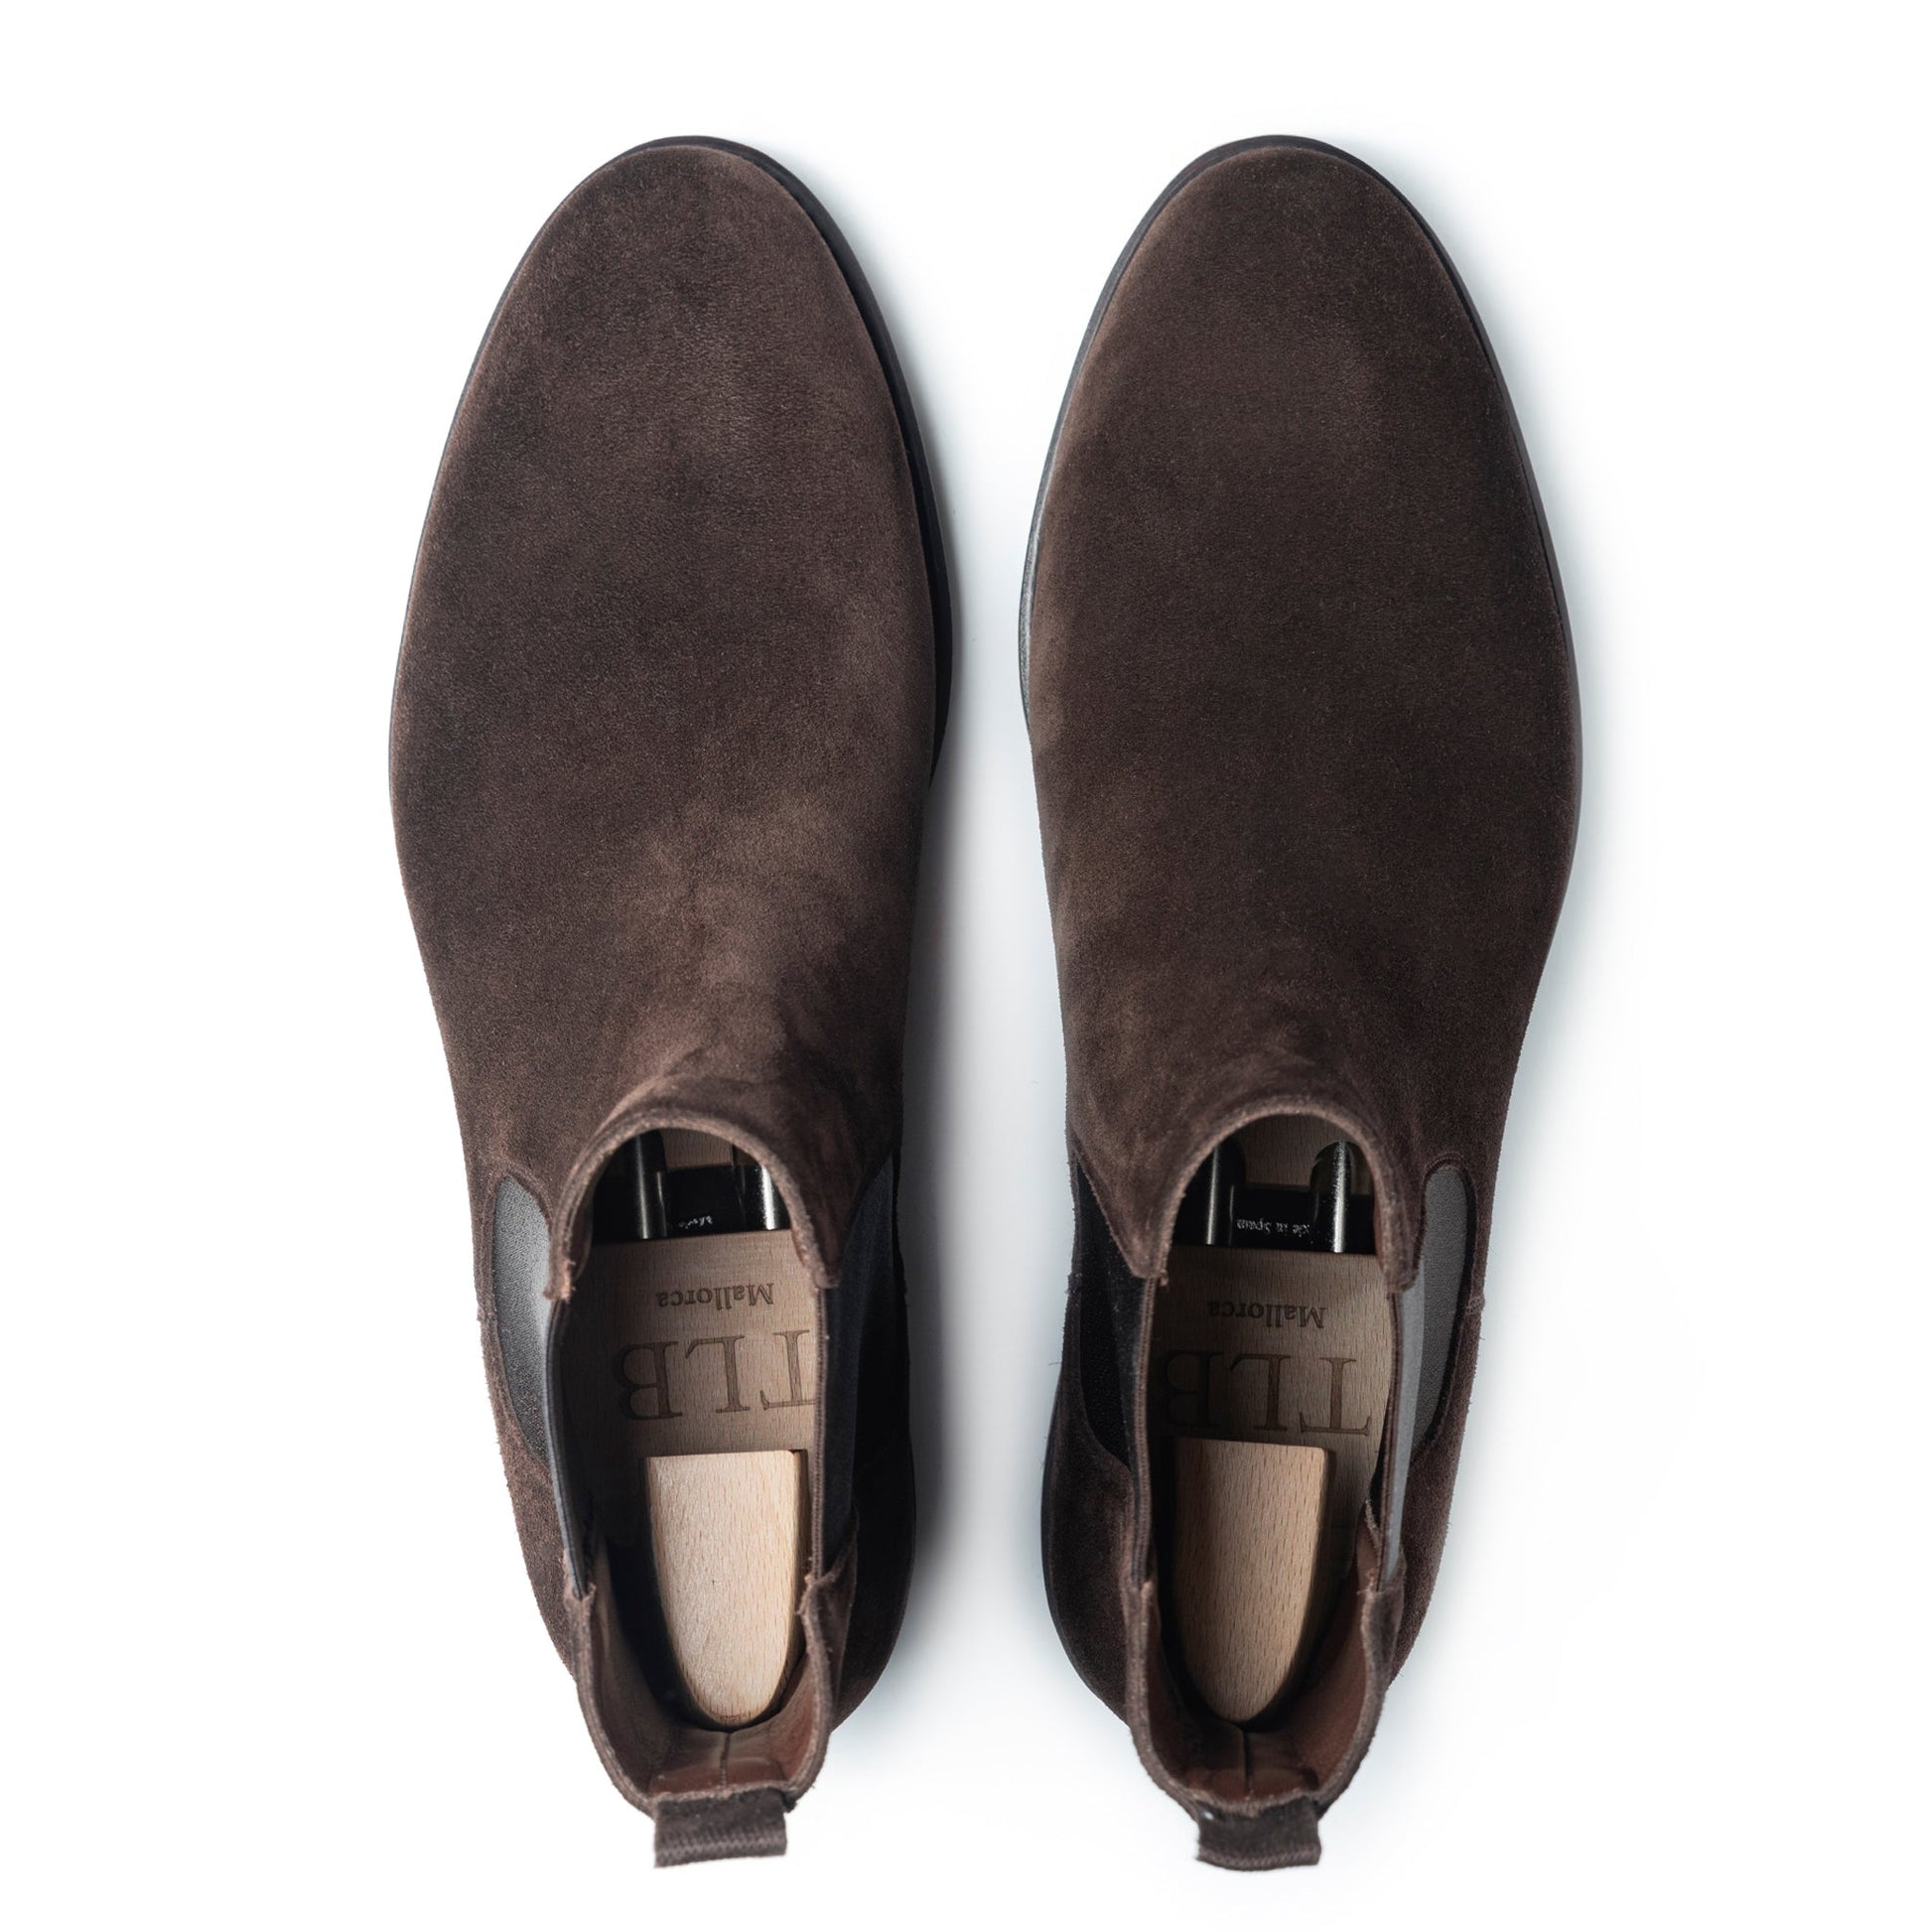 Northwest Territory Men’s Rupert Suede Leather Warm/Cozy/Indoor Slippers